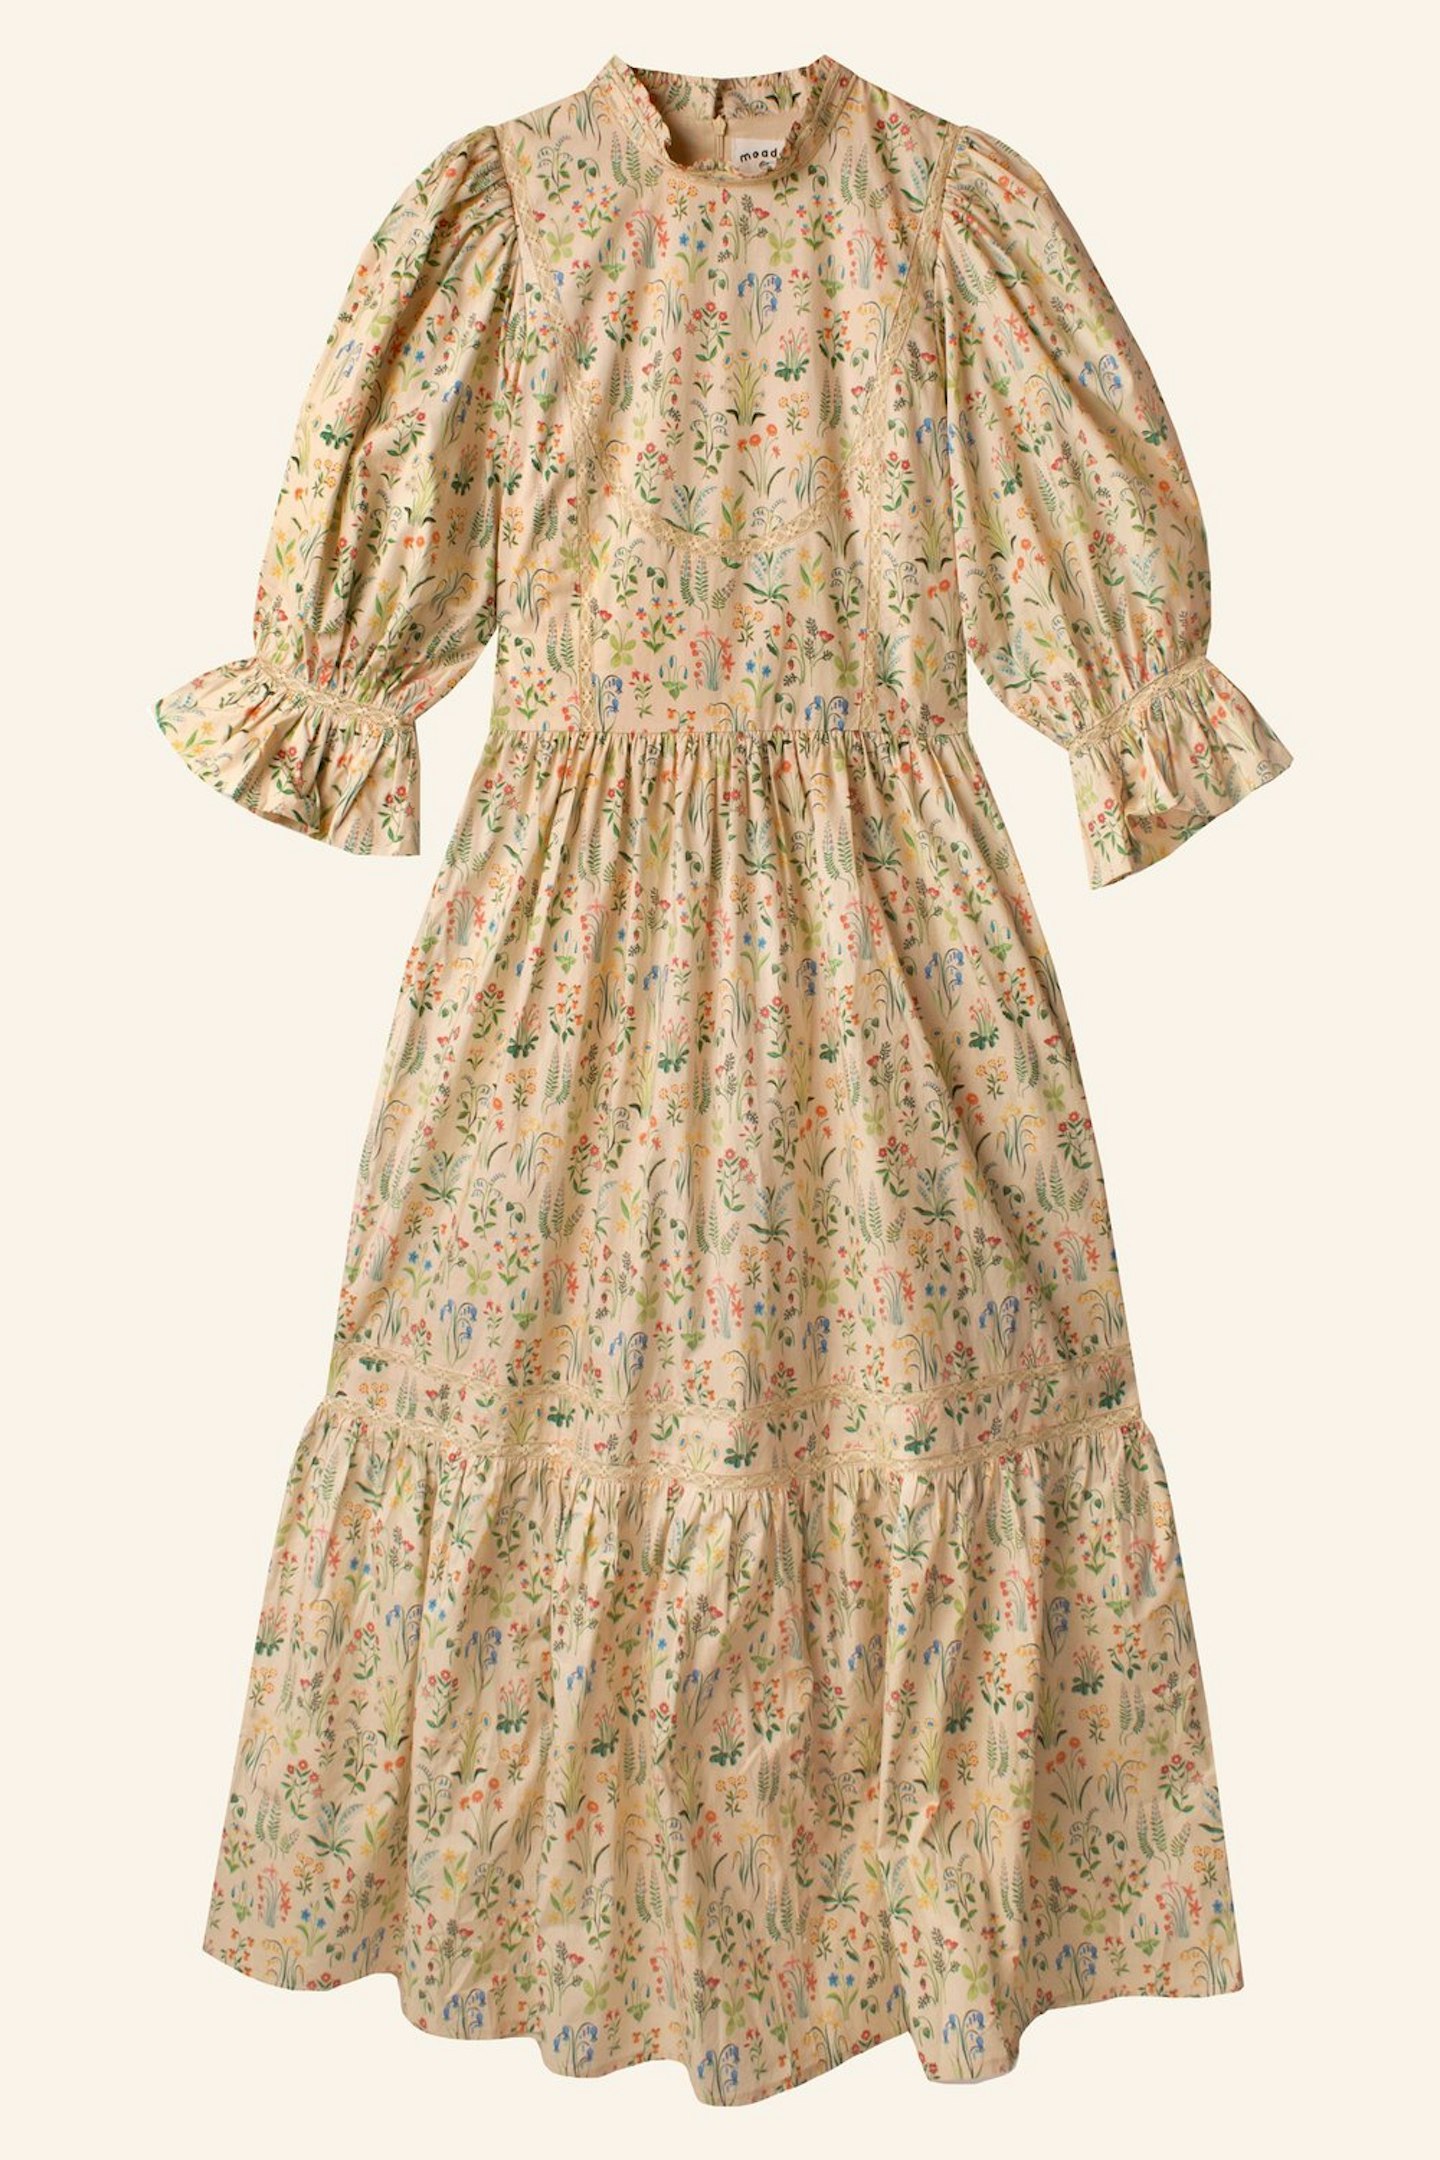 Meadows, Prairie Dress, £225